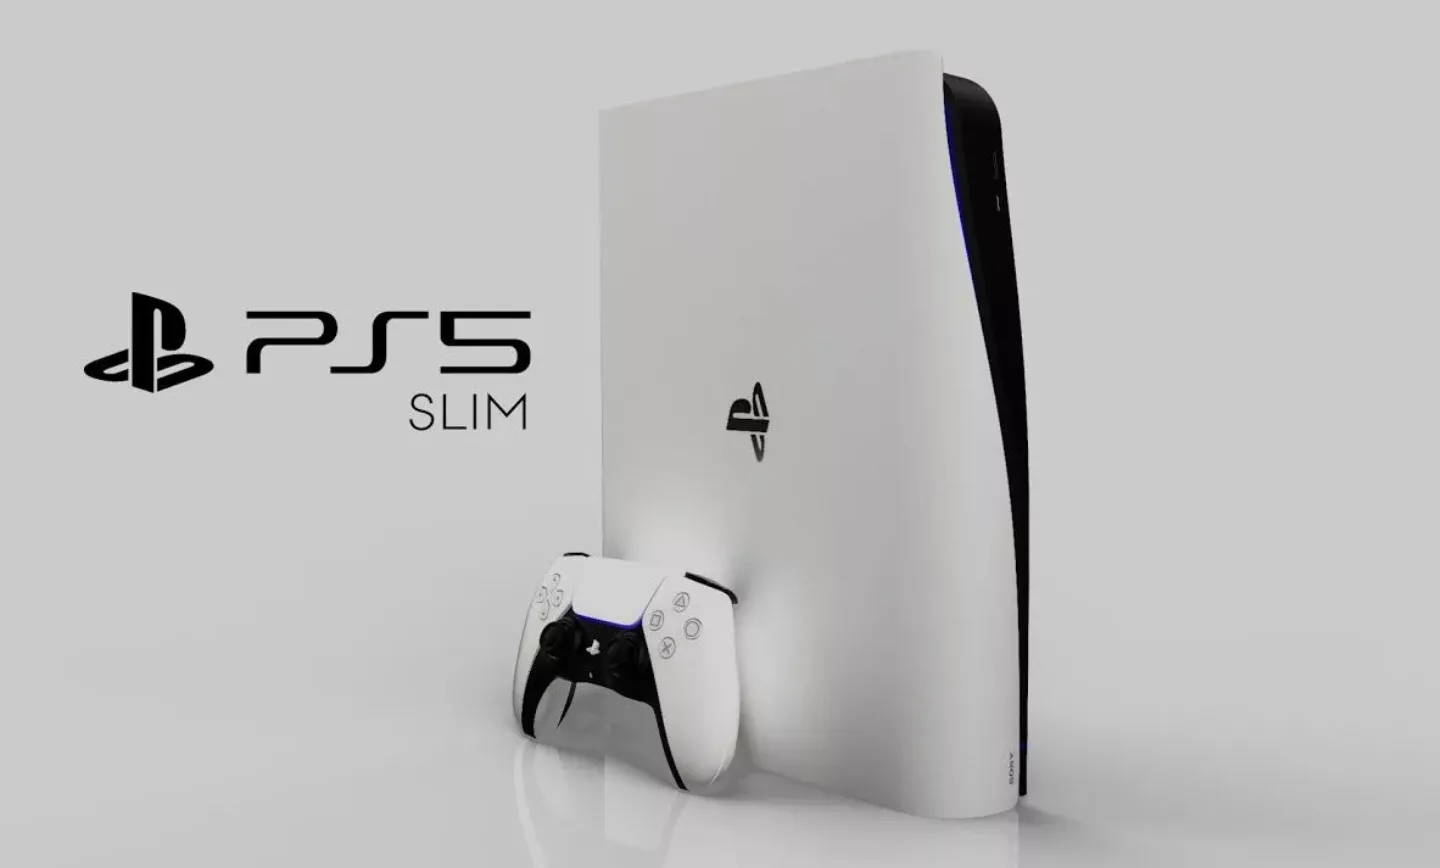 شایعه: تصاویری از کنسول PS5 Slim منتشر شد